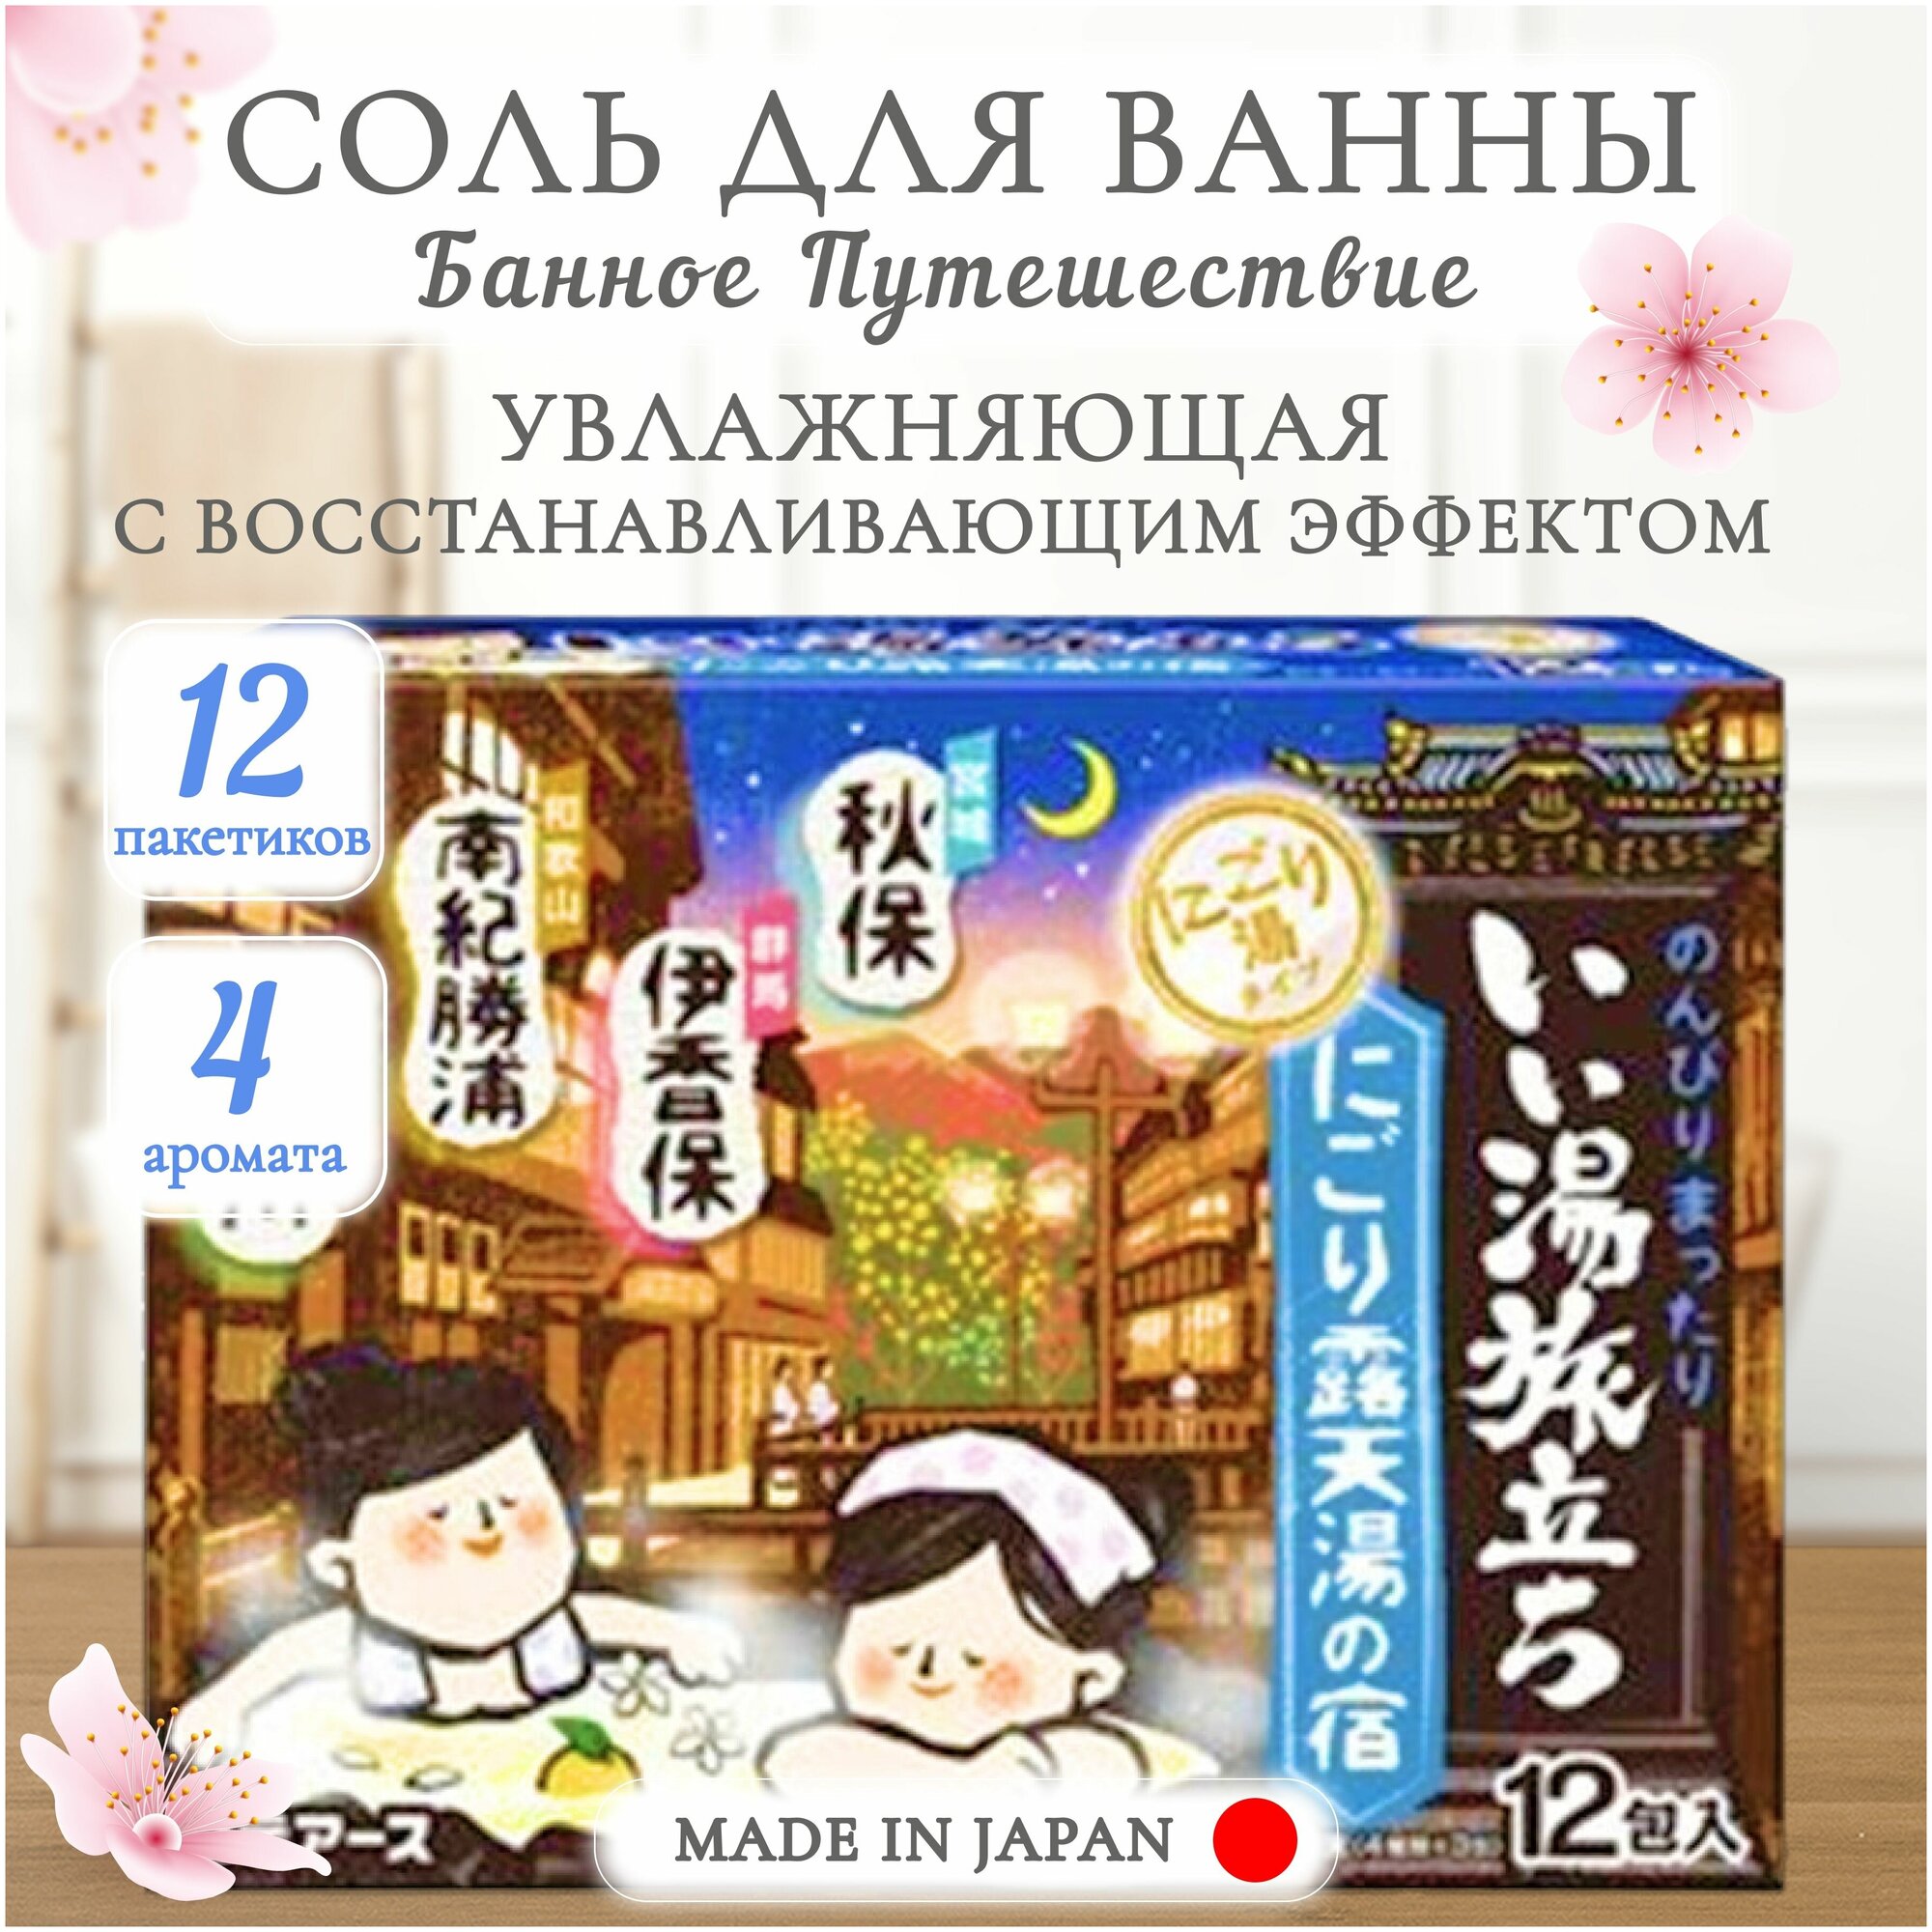 Увлажняющая соль для ванны Банное путешествие Hakugen Earth с восстанавливающим эффектом, с ароматами сандалового дерева, гардении, цитруса и свежей травы, 12 пакетиков Япония